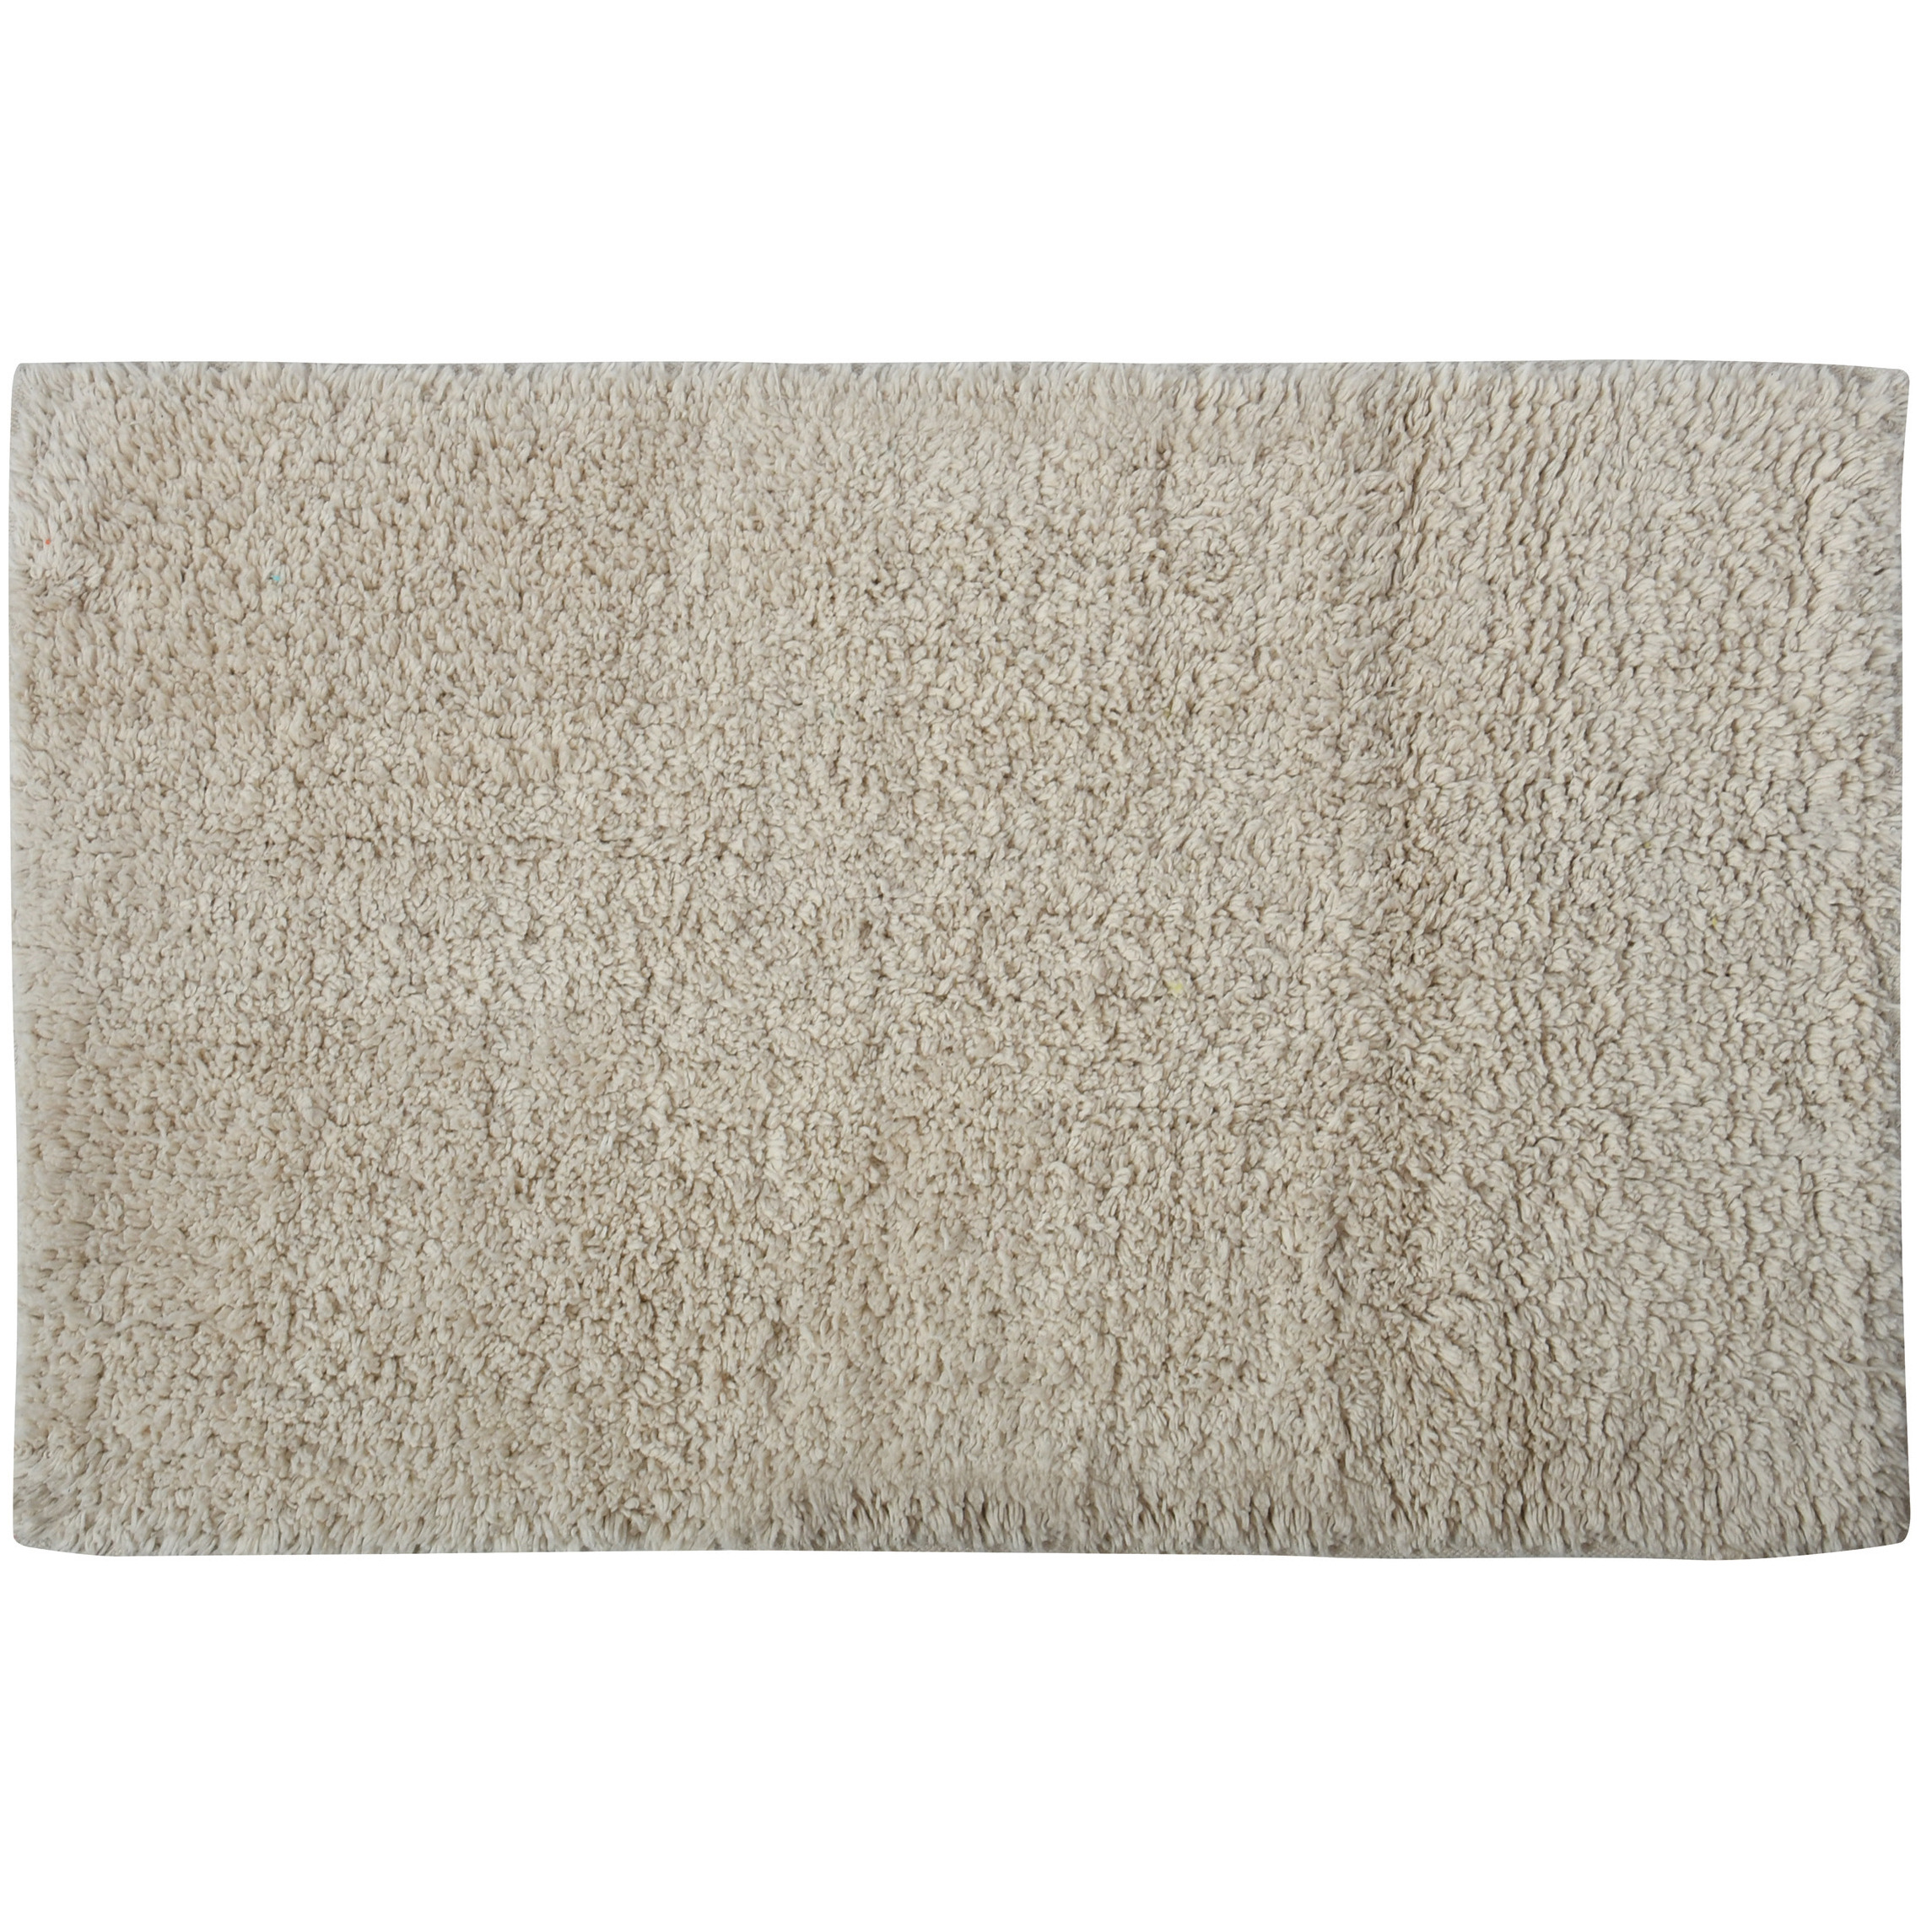 Badkamerkleedje-badmat voor op de vloer creme wit 45 x 70 cm